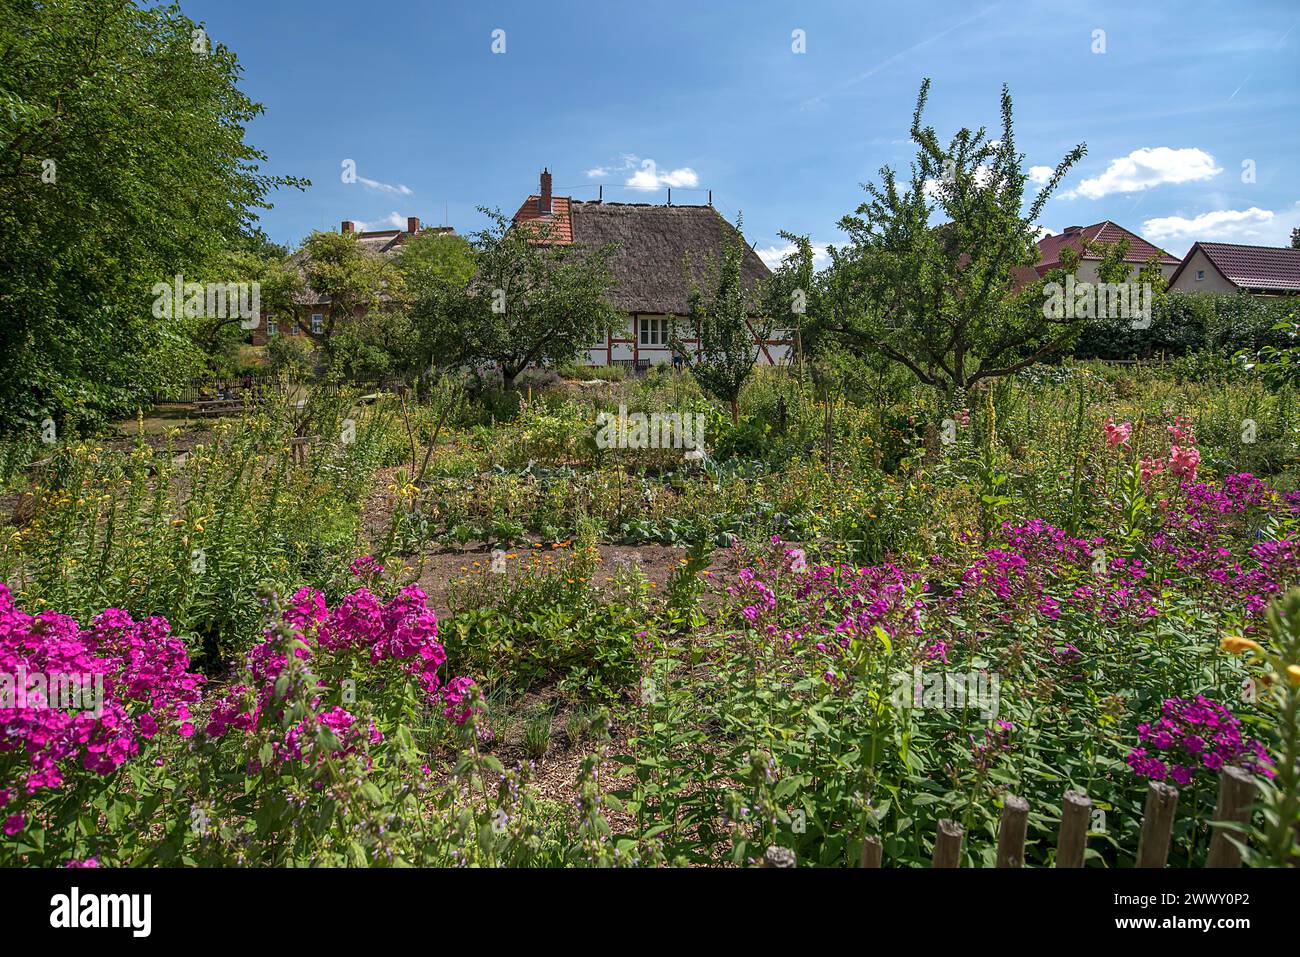 Bauerngarten mit reetgedecktem Bauernhaus aus dem 19. Jahrhundert, im Freilichtmuseum für Volkskunde Schwerin-Muess, Mecklenburg-Vorpommerm, Deutschland Stockfoto